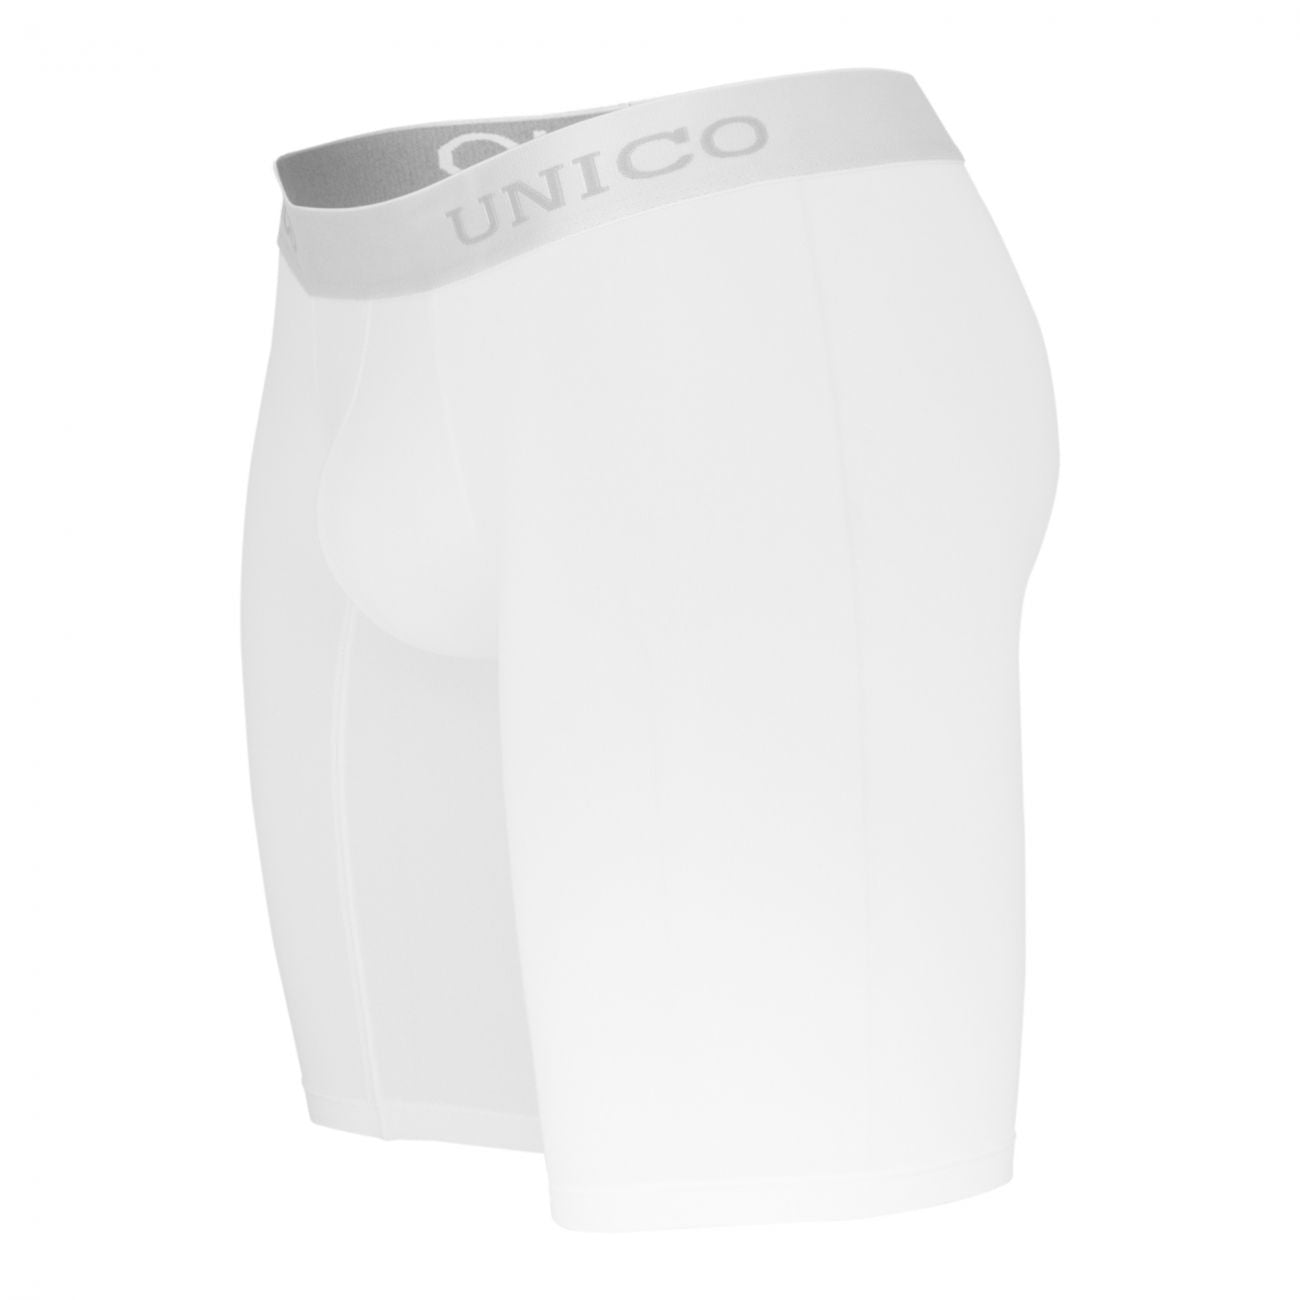 Unico (1212010030300) Boxer Briefs Cristalino Microfiber